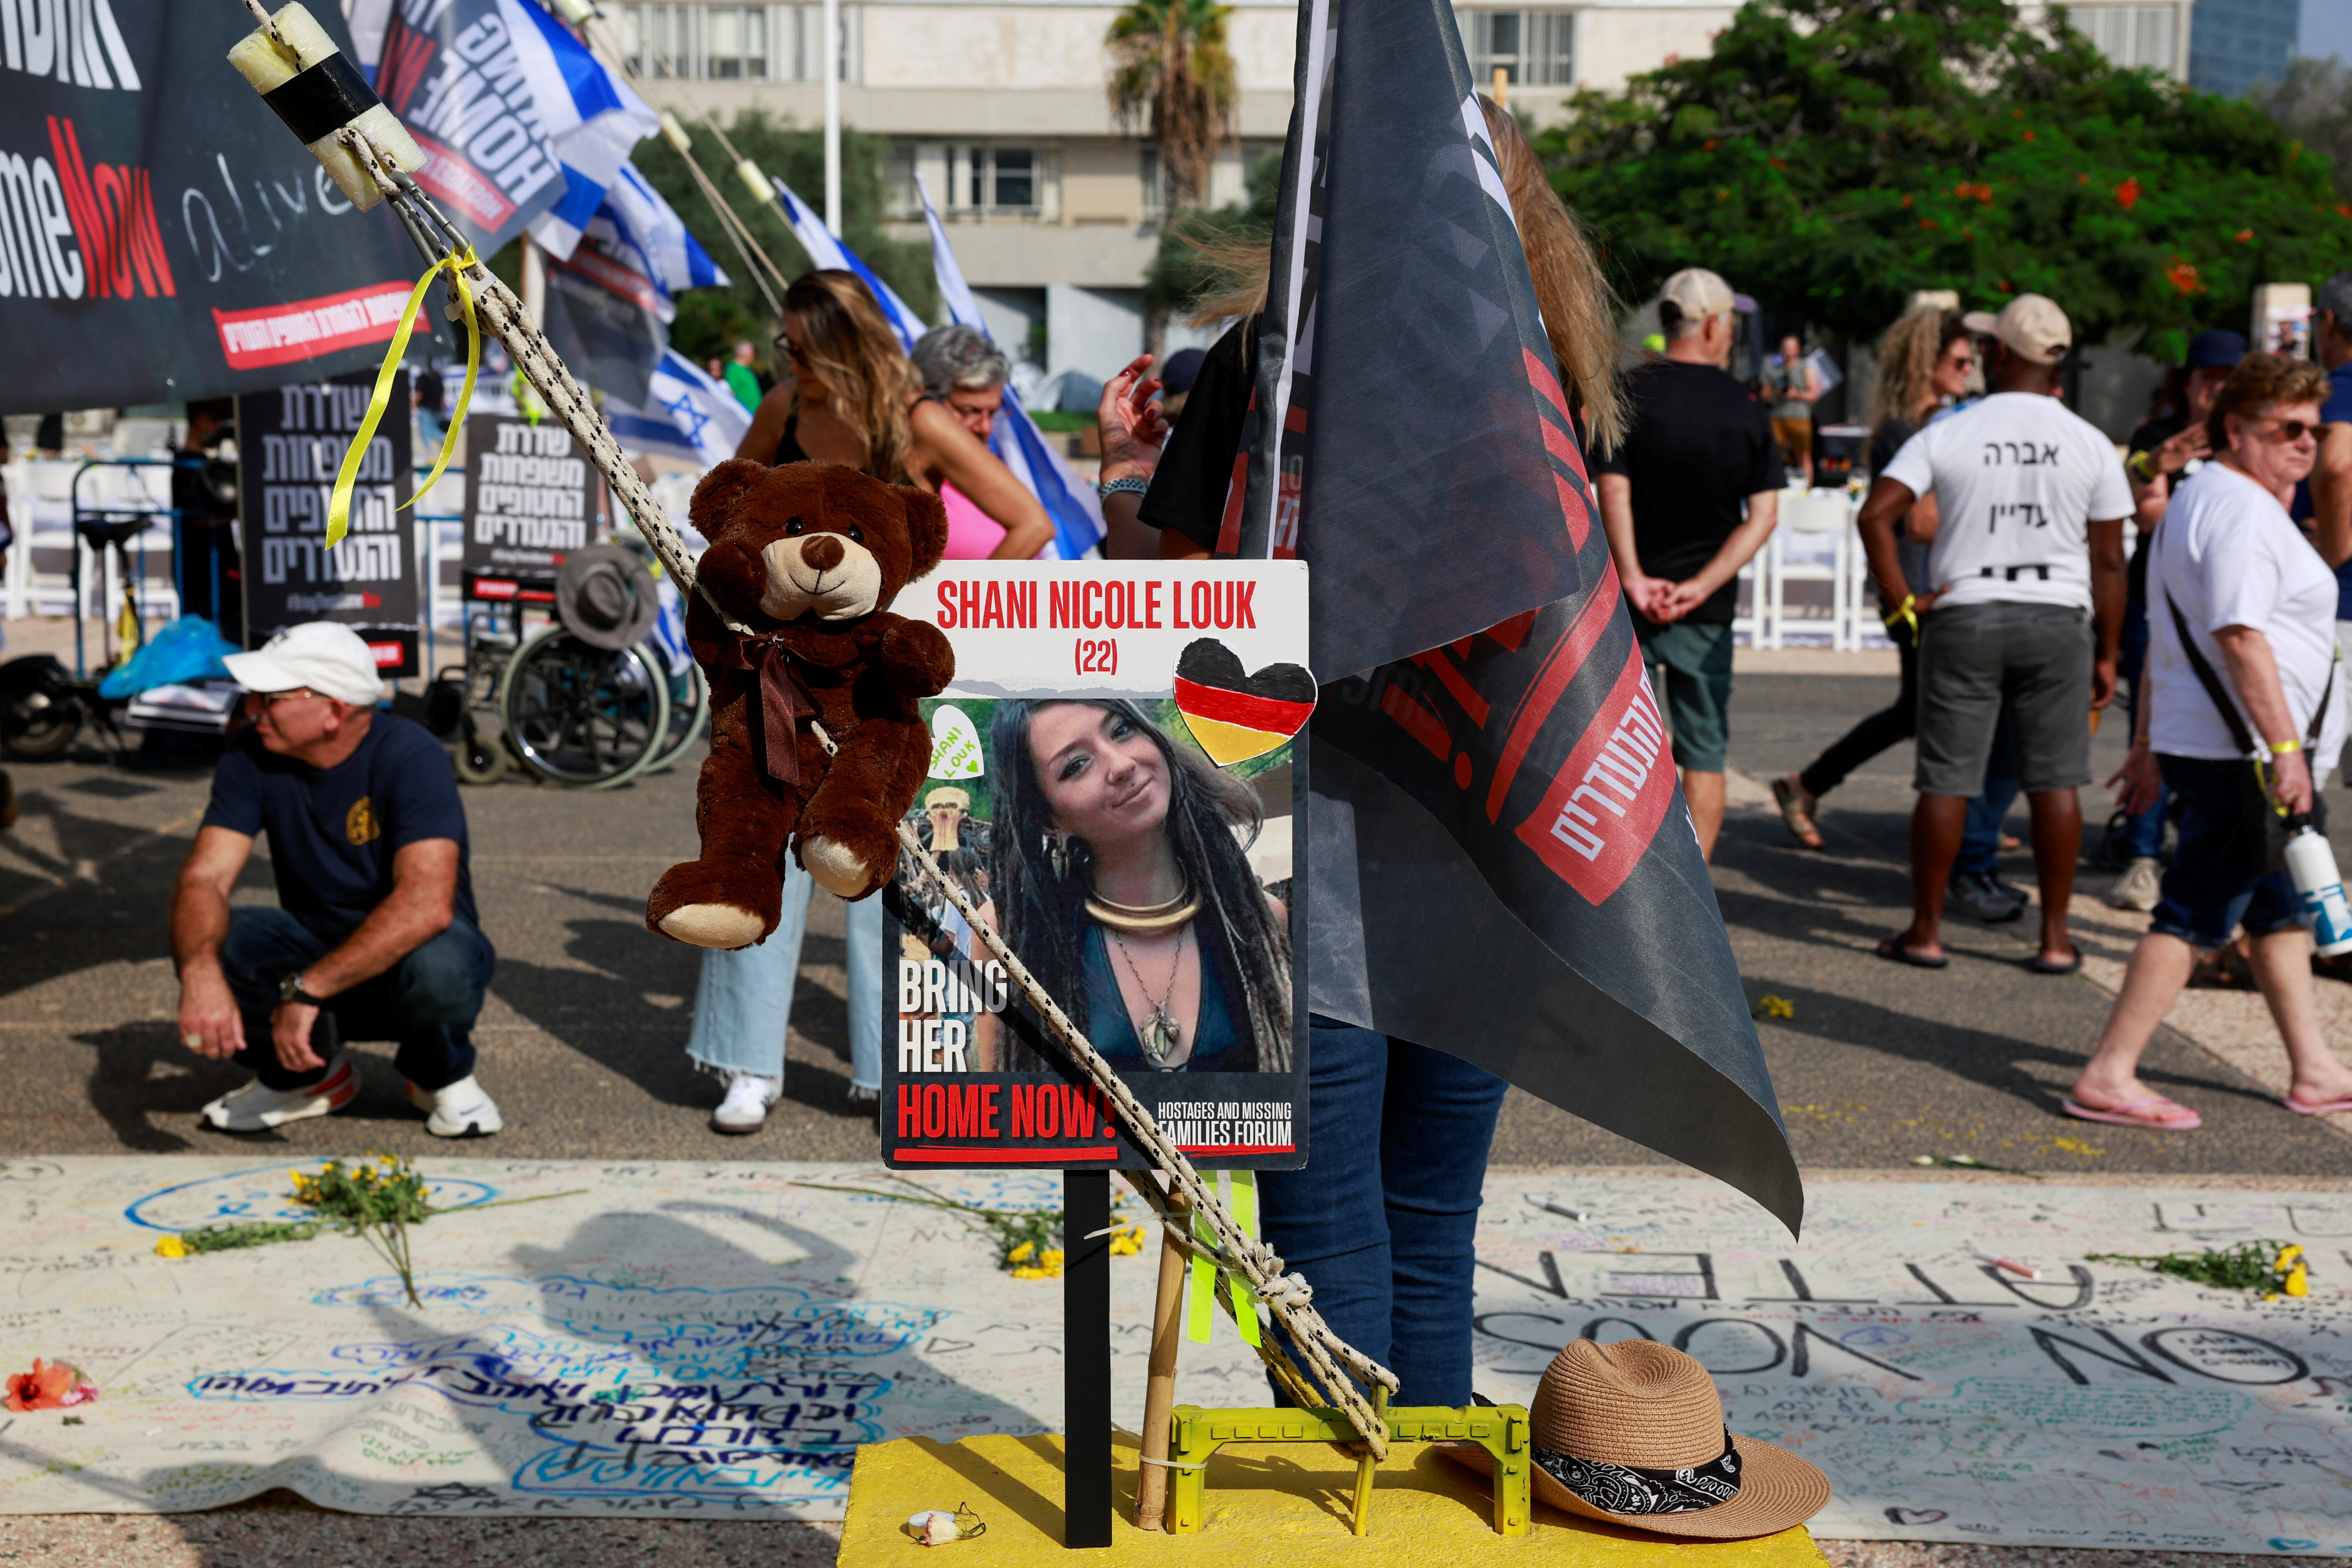 ハマス人質のドイツ系イスラエル人女性が死亡＝イスラエル - ロイター (Reuters Japan)